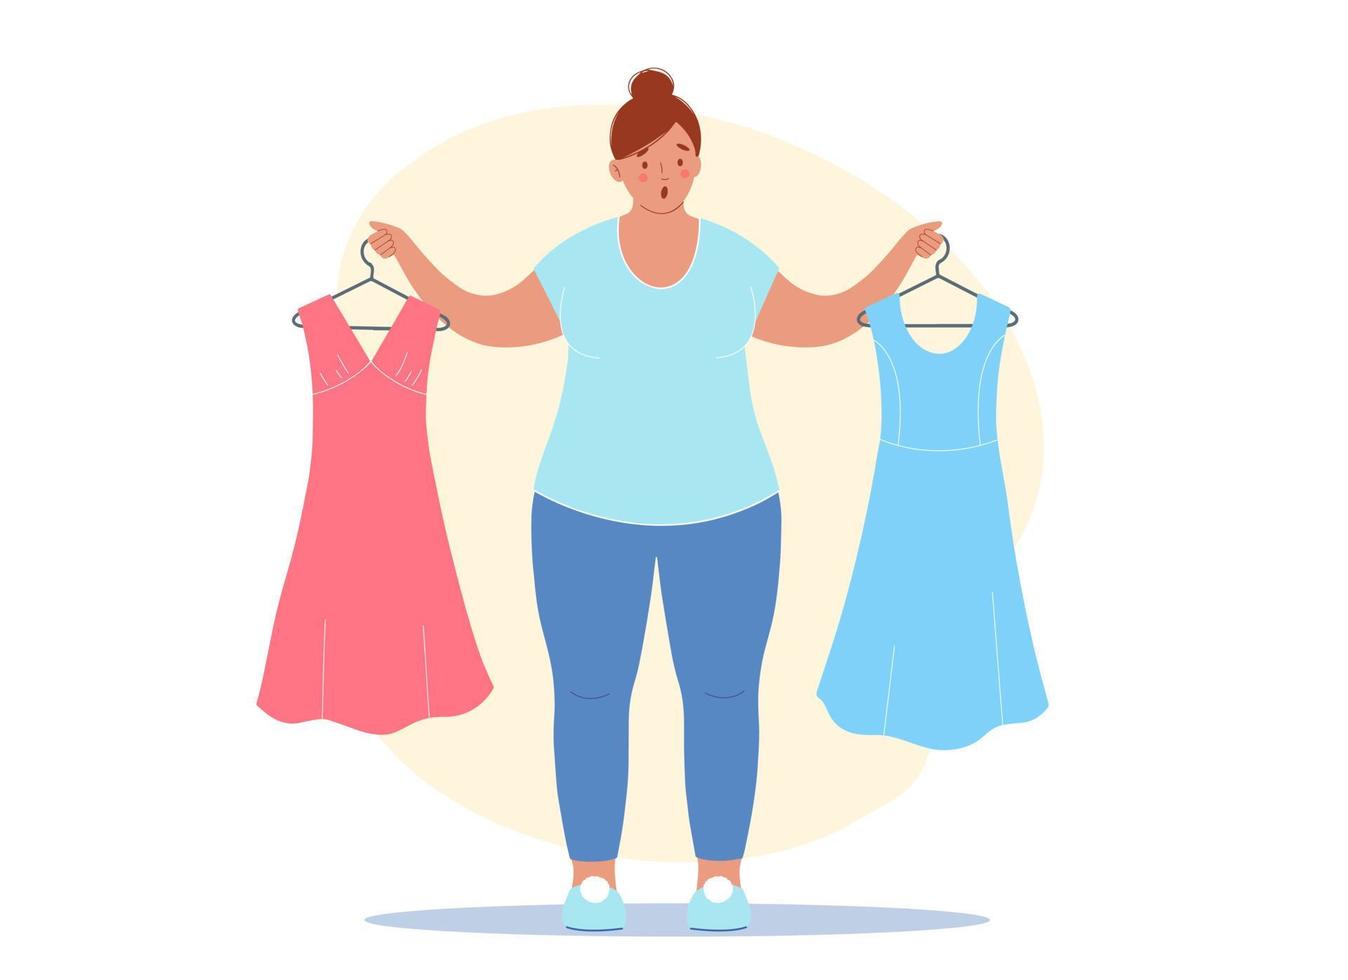 vrouw met overgewicht raakt van streek vanwege de extra kilo's. ze houdt haar oude jurken in haar handen, die passen niet meer, ze zijn te klein voor haar vector